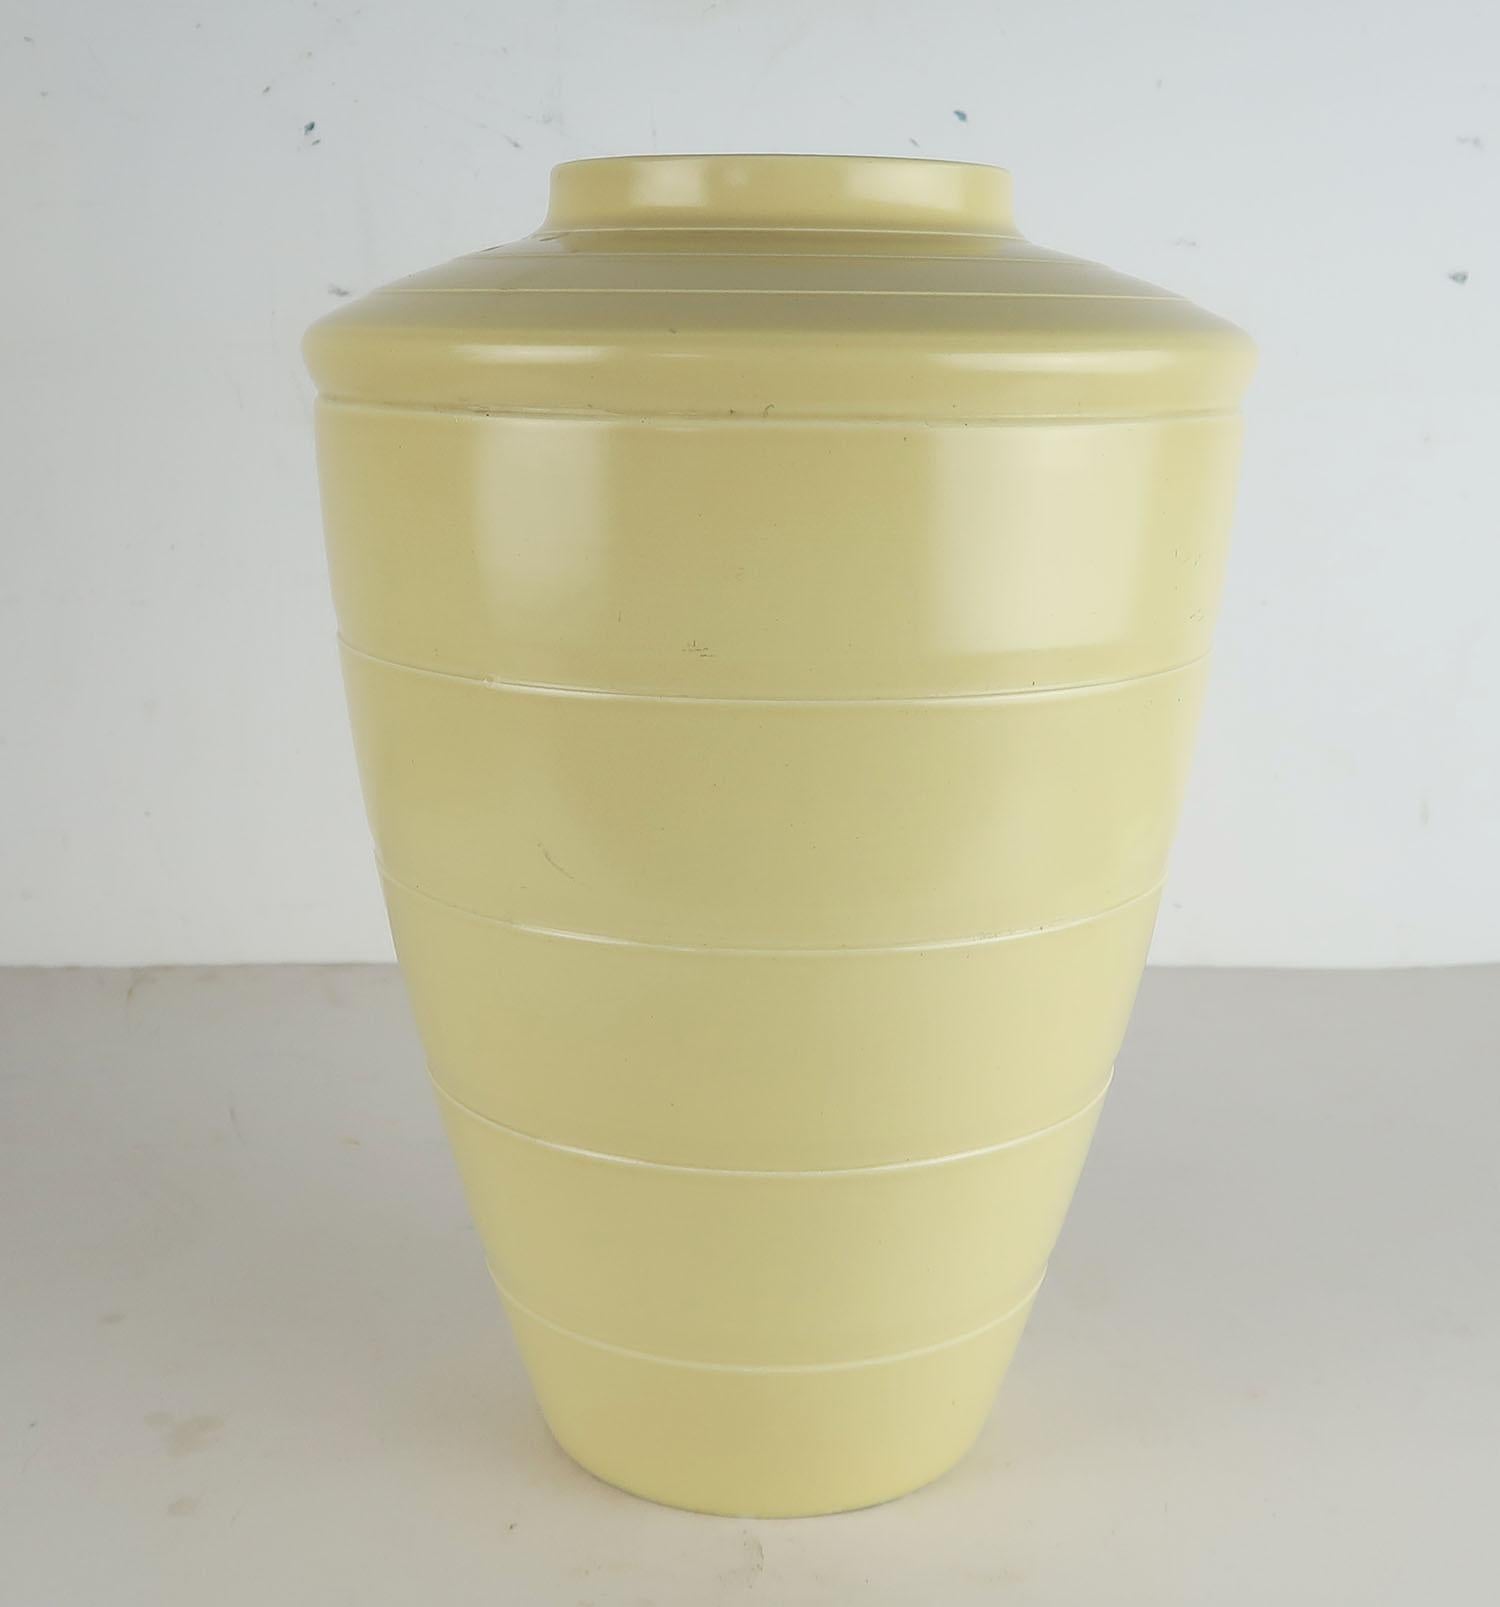 Joli vase de forme et de bonne taille en céramique crème/jaune pâle fabriqué par Wedgwood.

Conçu par Keith Murray

Marques de fabrique et signature en fac-similé sur la base

Petite imperfection sur le bord de la base.



